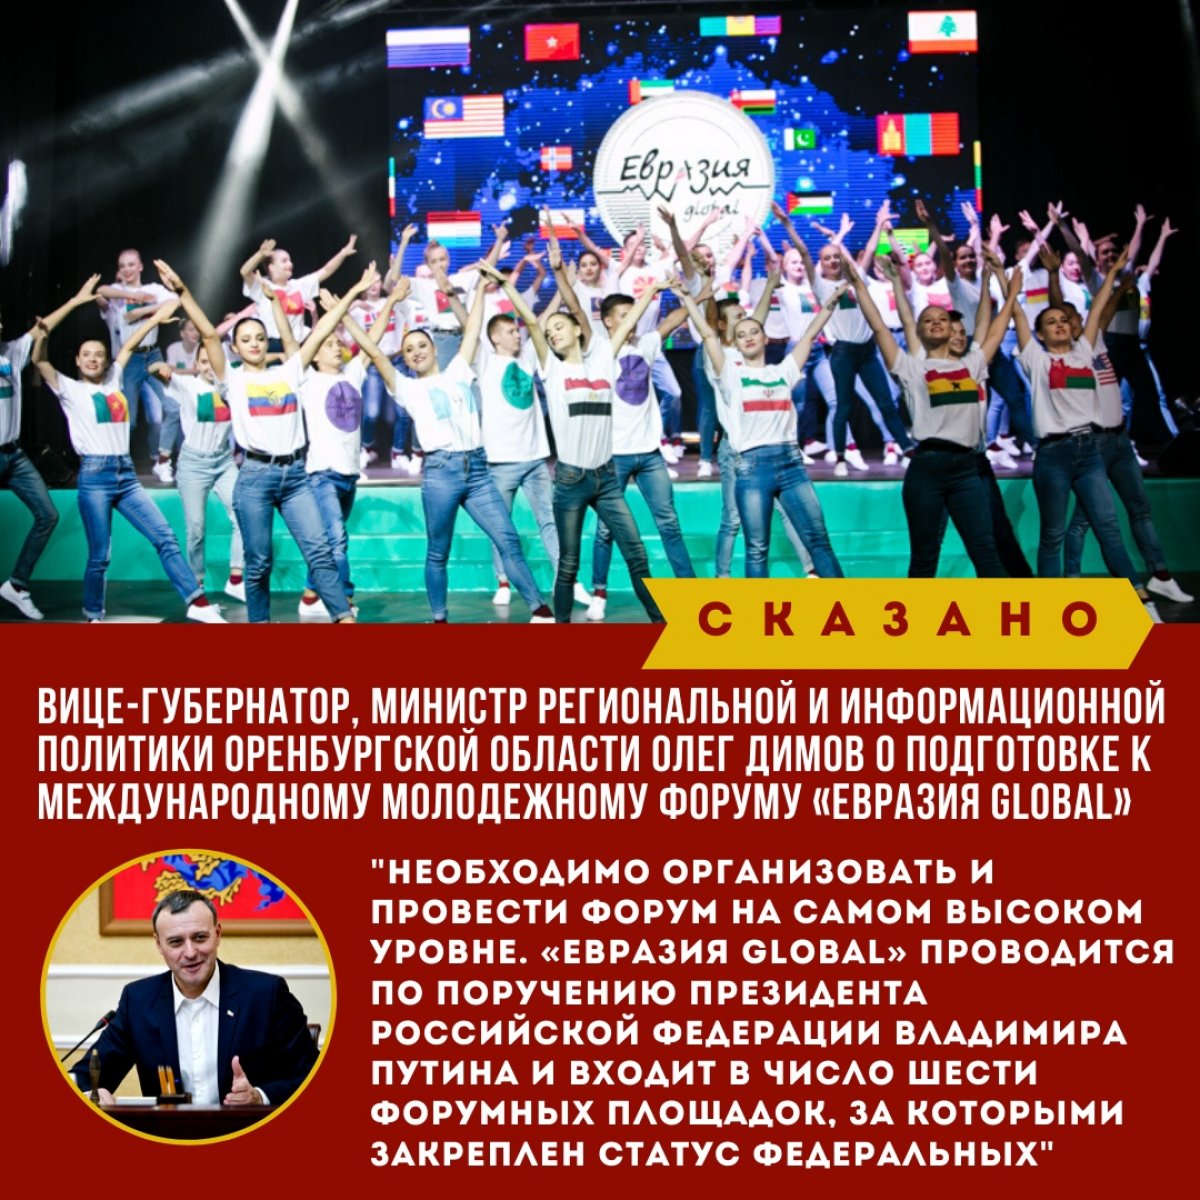 В Оренбуржье началась подготовка к пятому международному молодежному форуму «Евразия Global», который пройдет со 2 по 8 сентября. Ожидается участие 1,2 тысячи человек: 400 иностранцев, 400 россиян, 250 волонтеров, а также эксперты